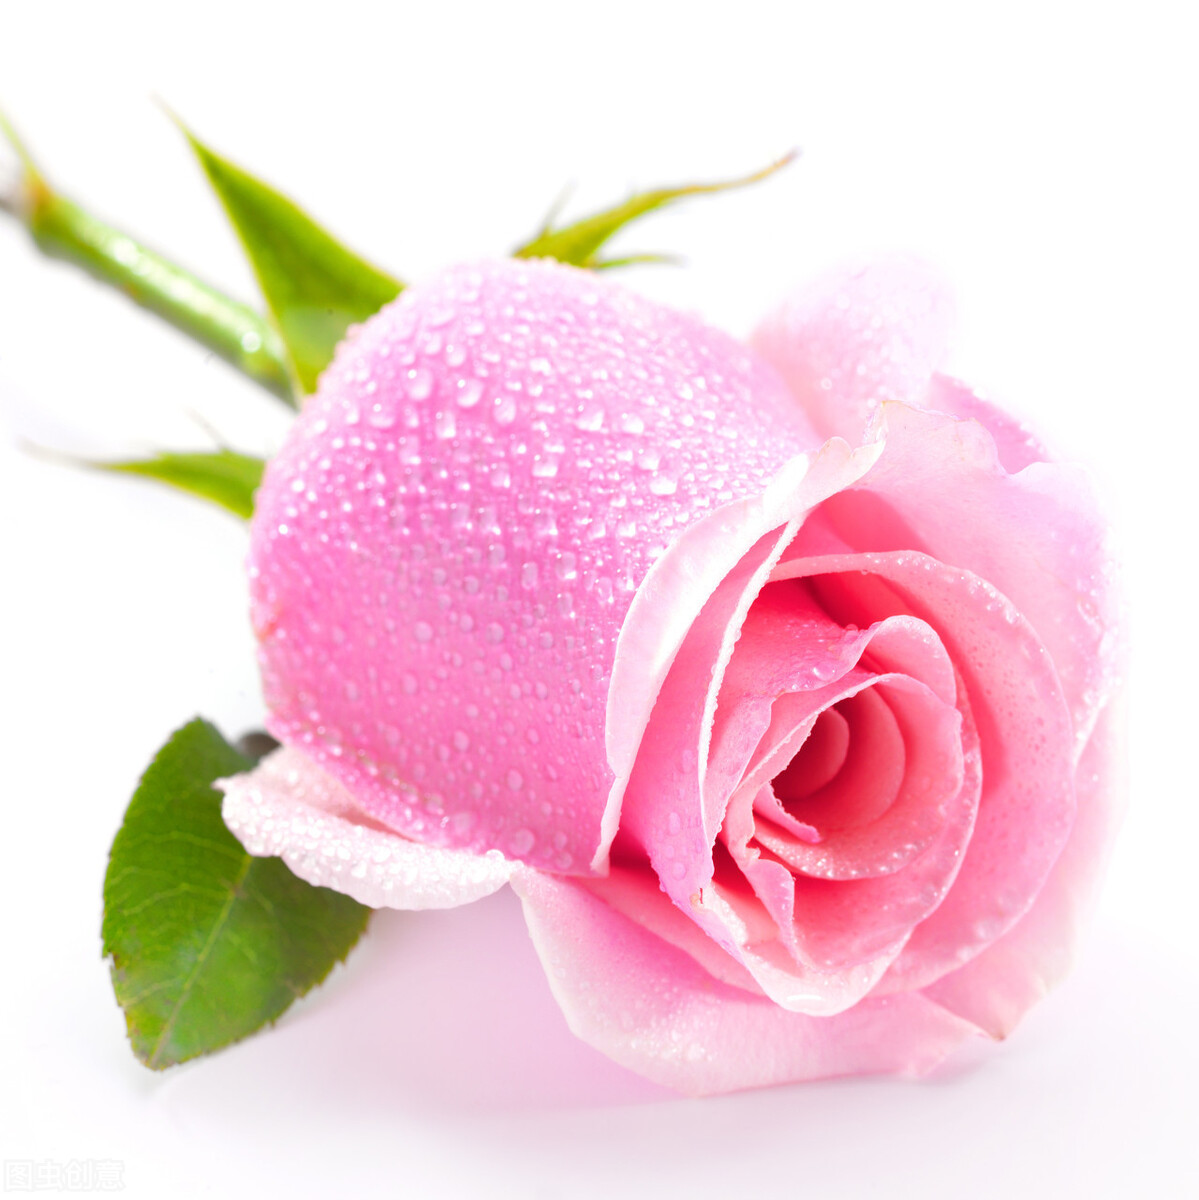 粉色玫瑰的花语 粉色佳人玫瑰花语